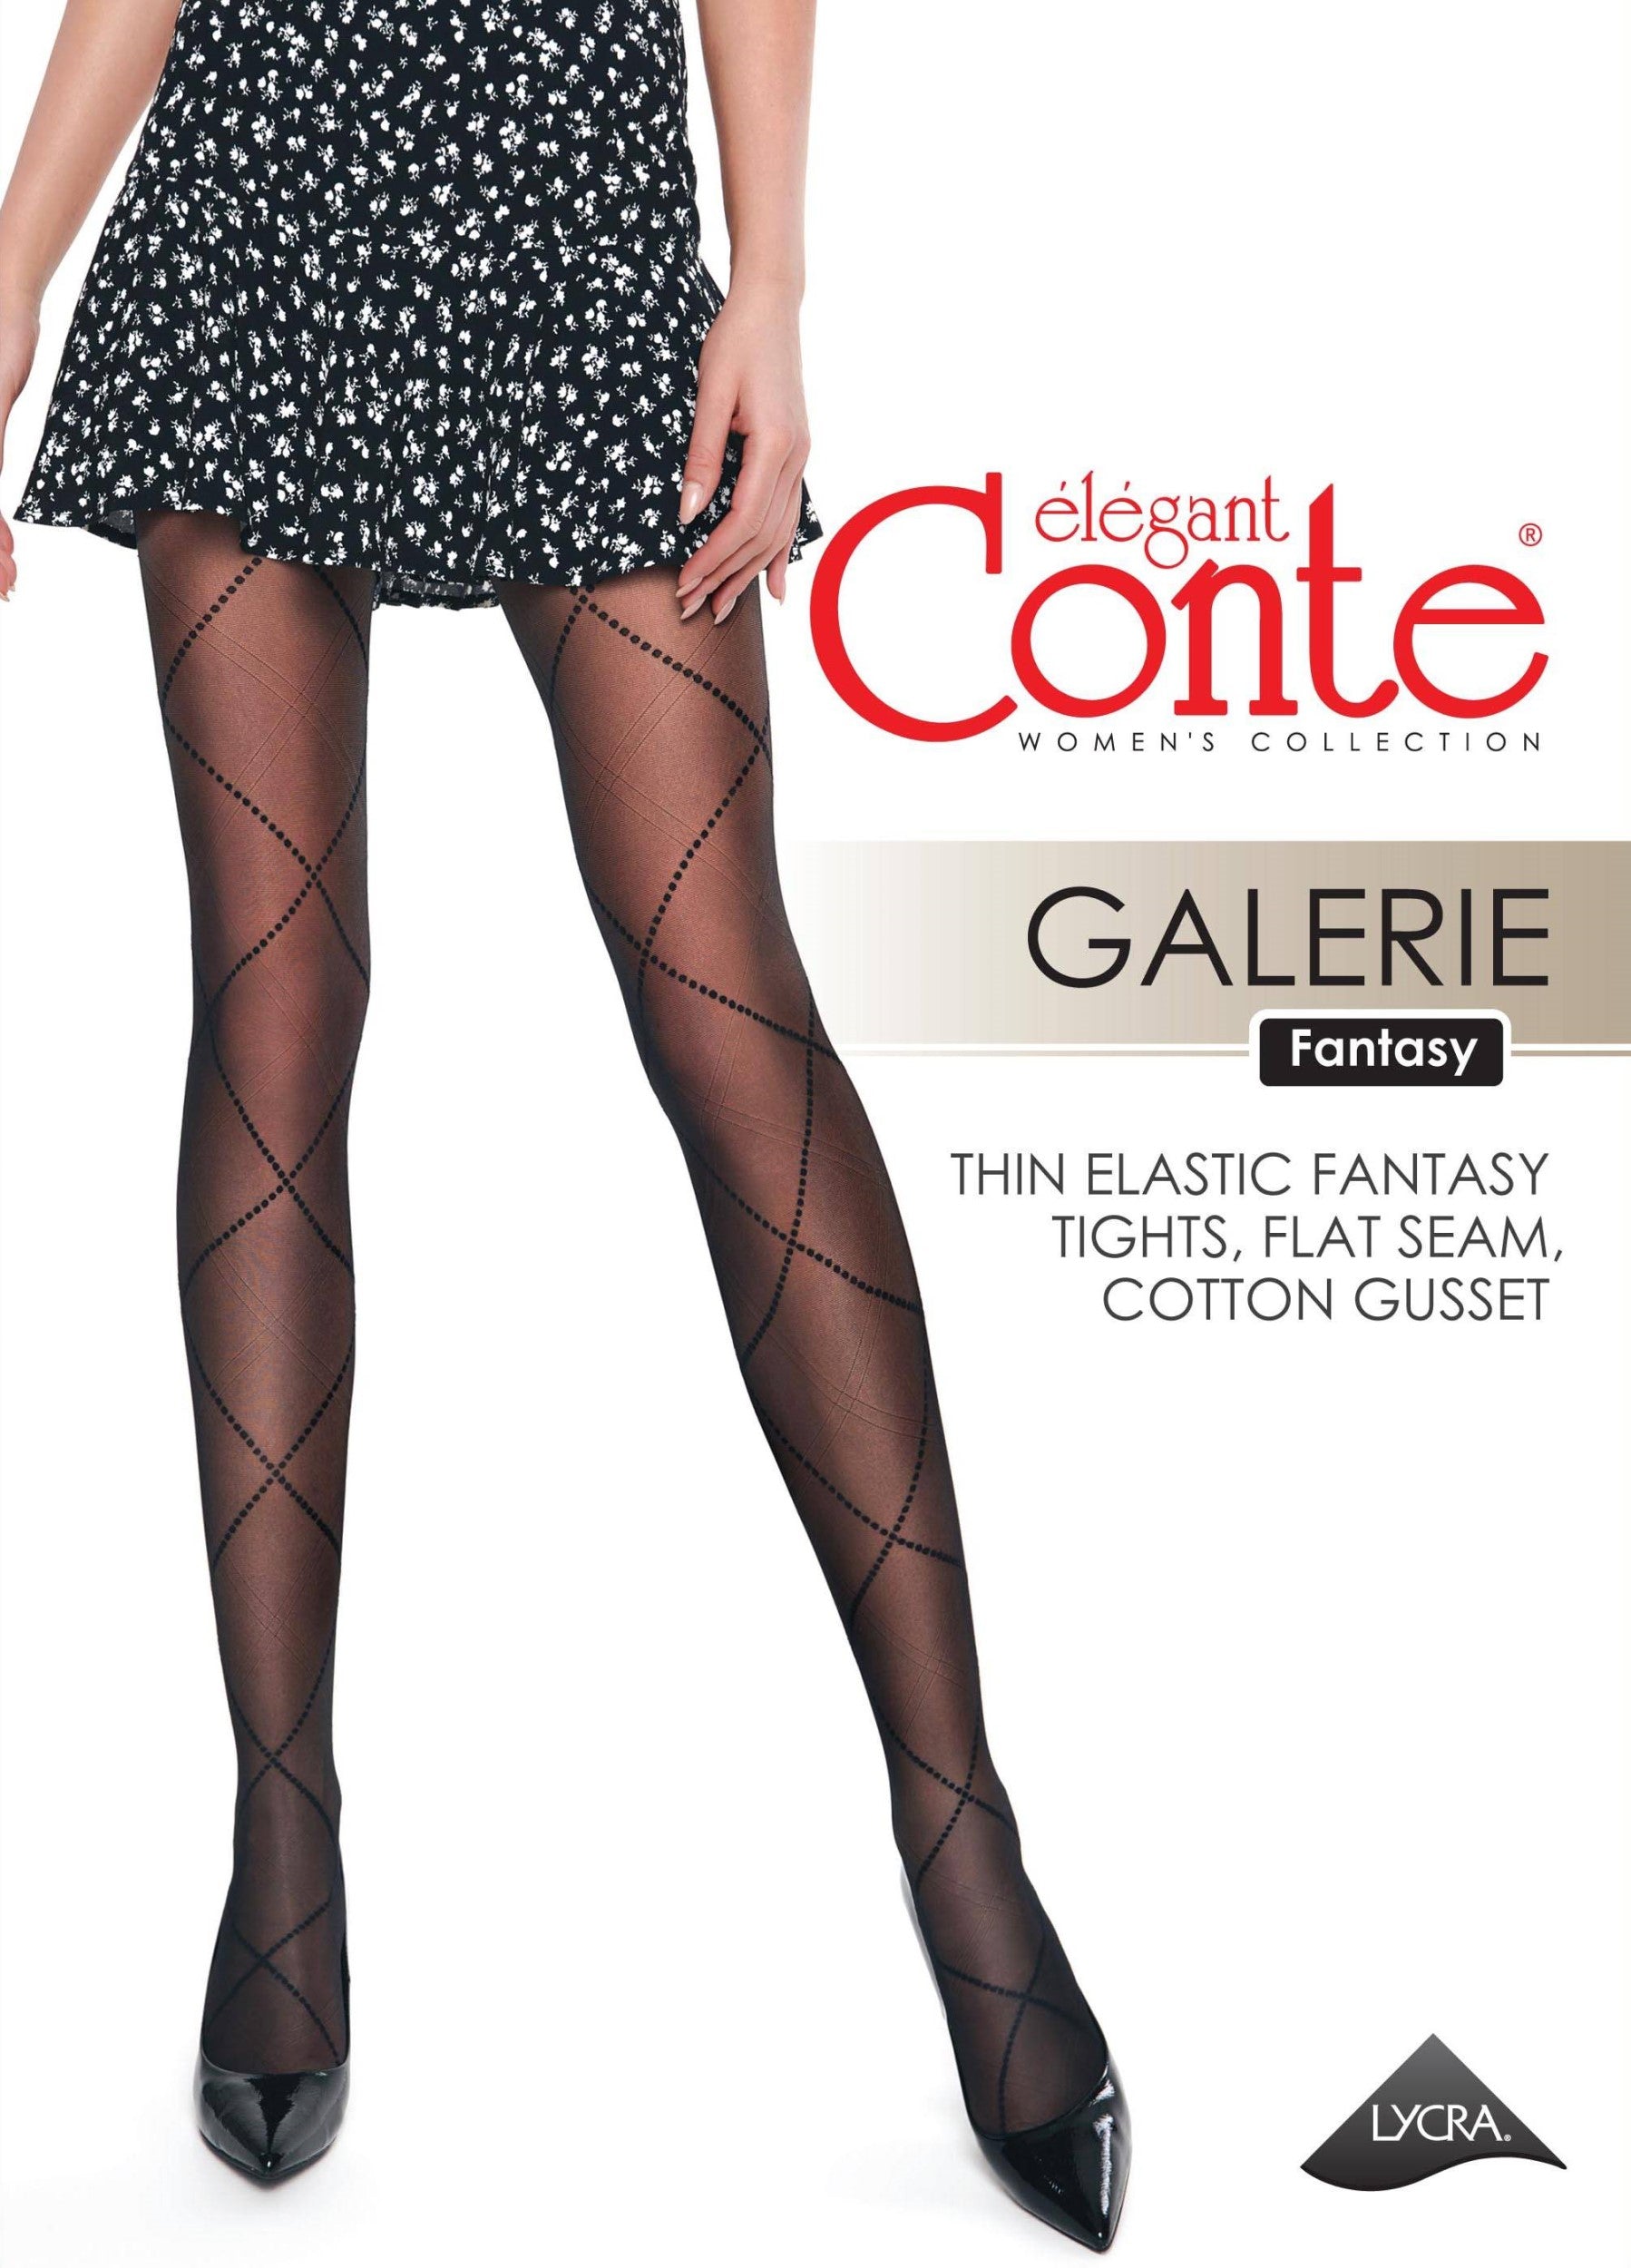 20 denske hlačne nogavice s karo vzorcem GALERIE